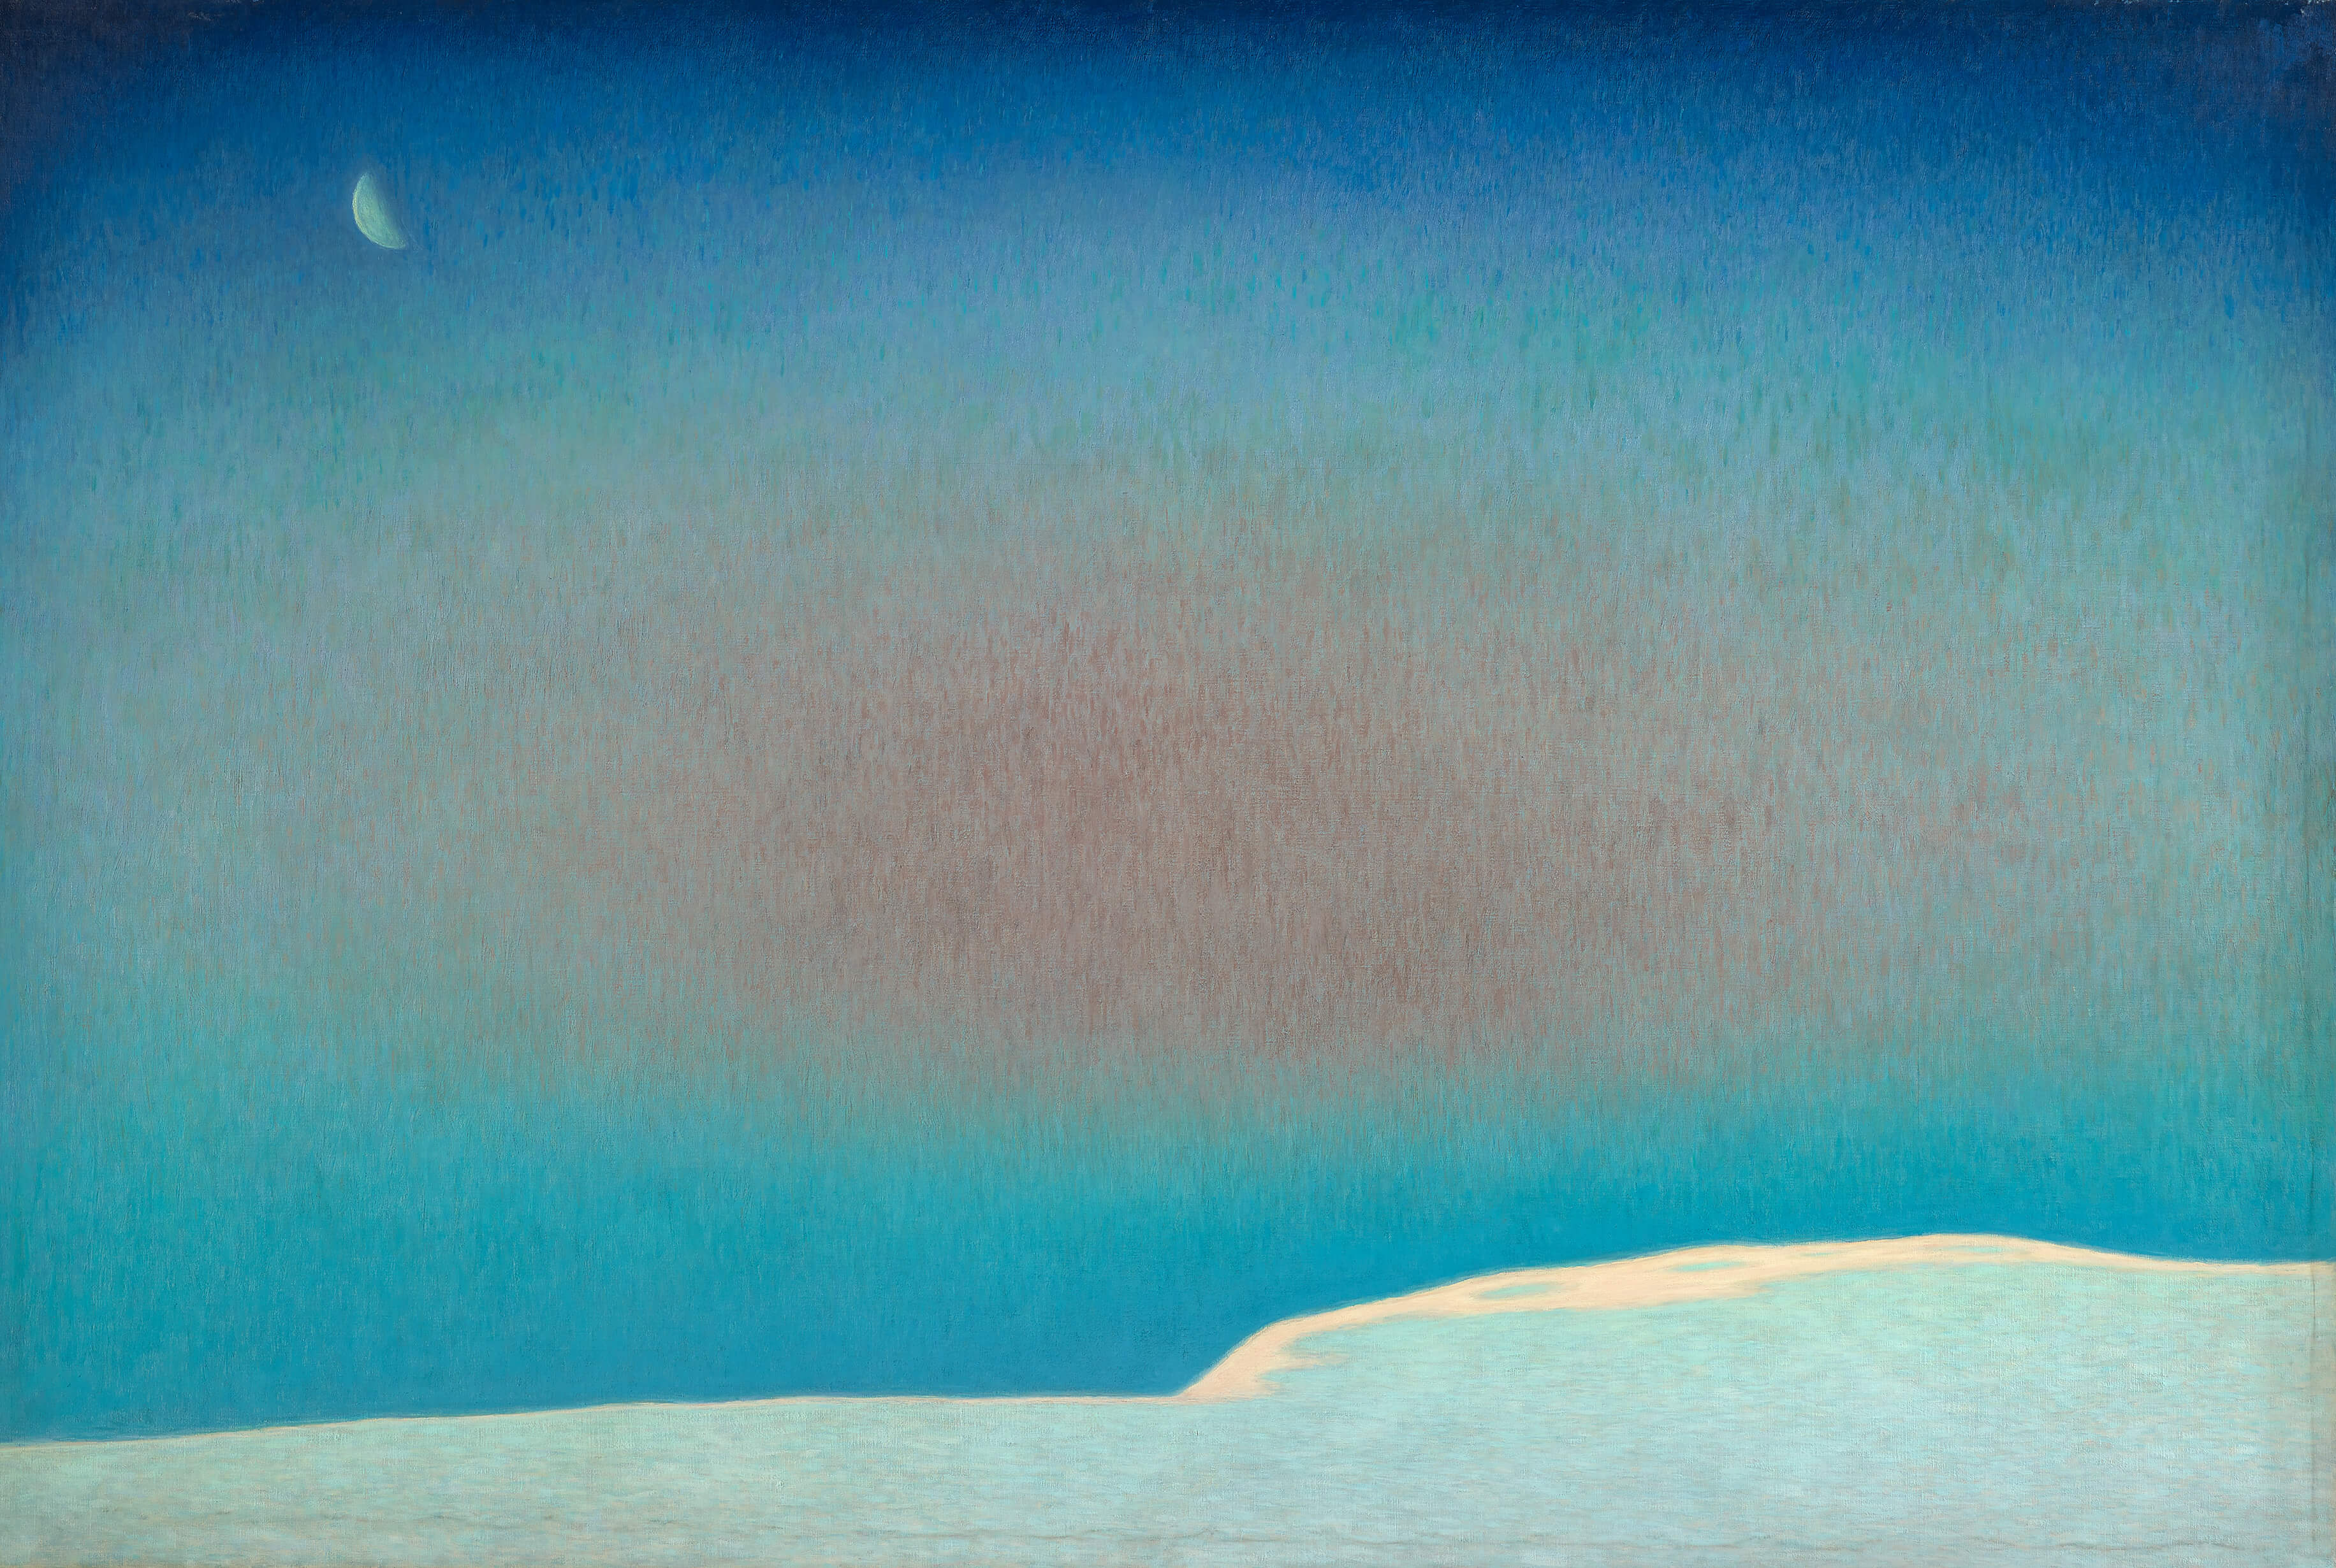 何德來，《黎明》，1962，油彩、畫布，130×194公分，臺北市立美術館典藏。圖像由臺北市立美術館提供。